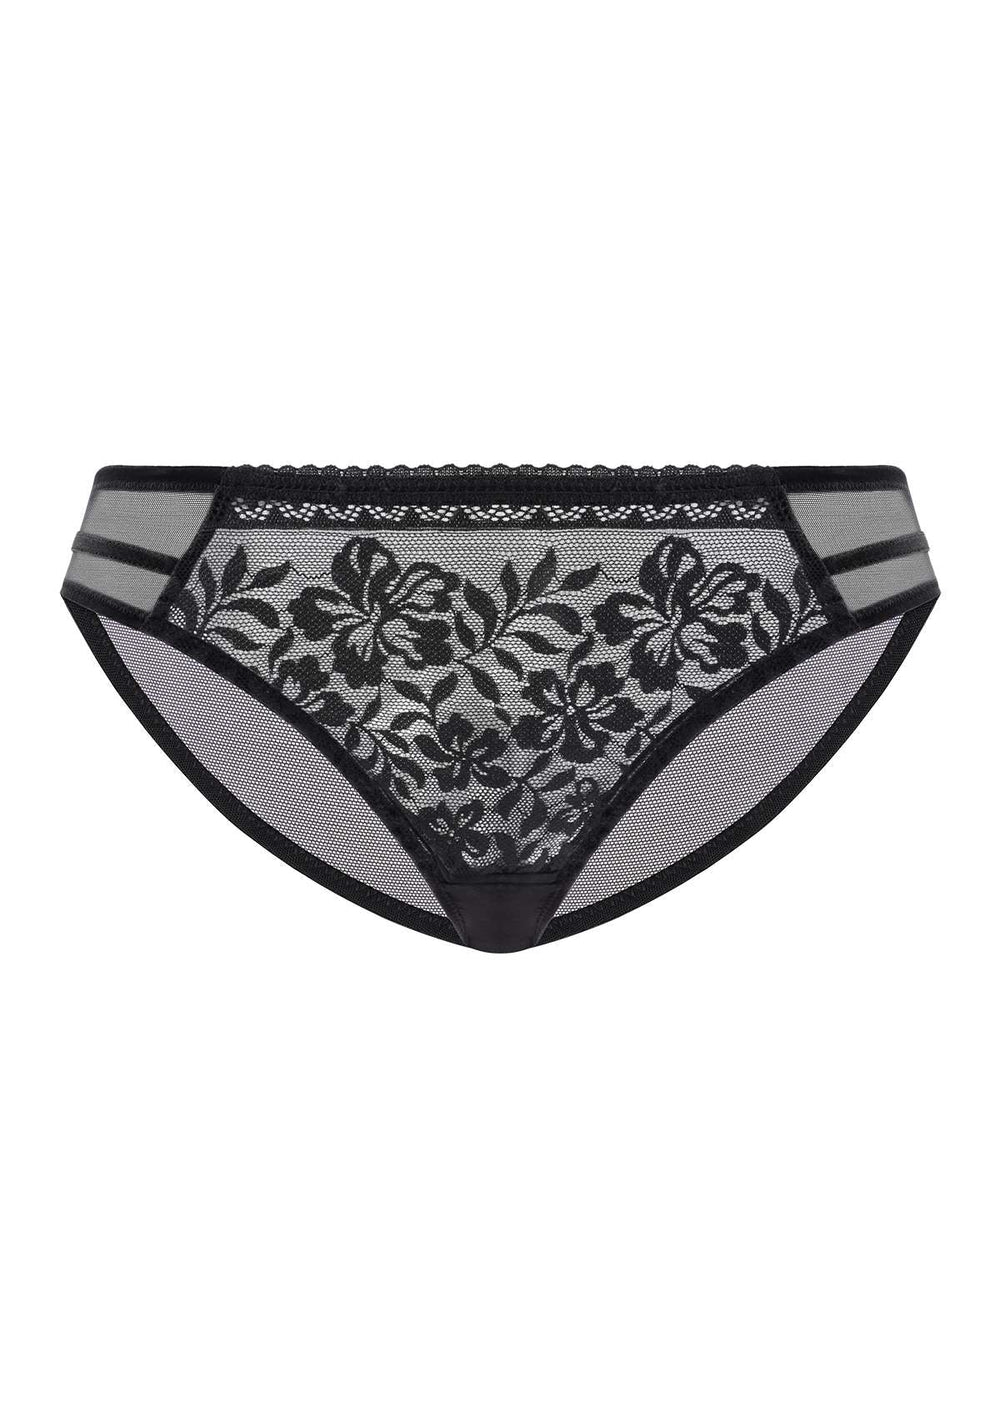 https://www.hsialife.com/cdn/shop/files/hsia-gladioli-black-floral-lace-bikini-underwear-39160644206841.jpg?v=1684150515&width=1000